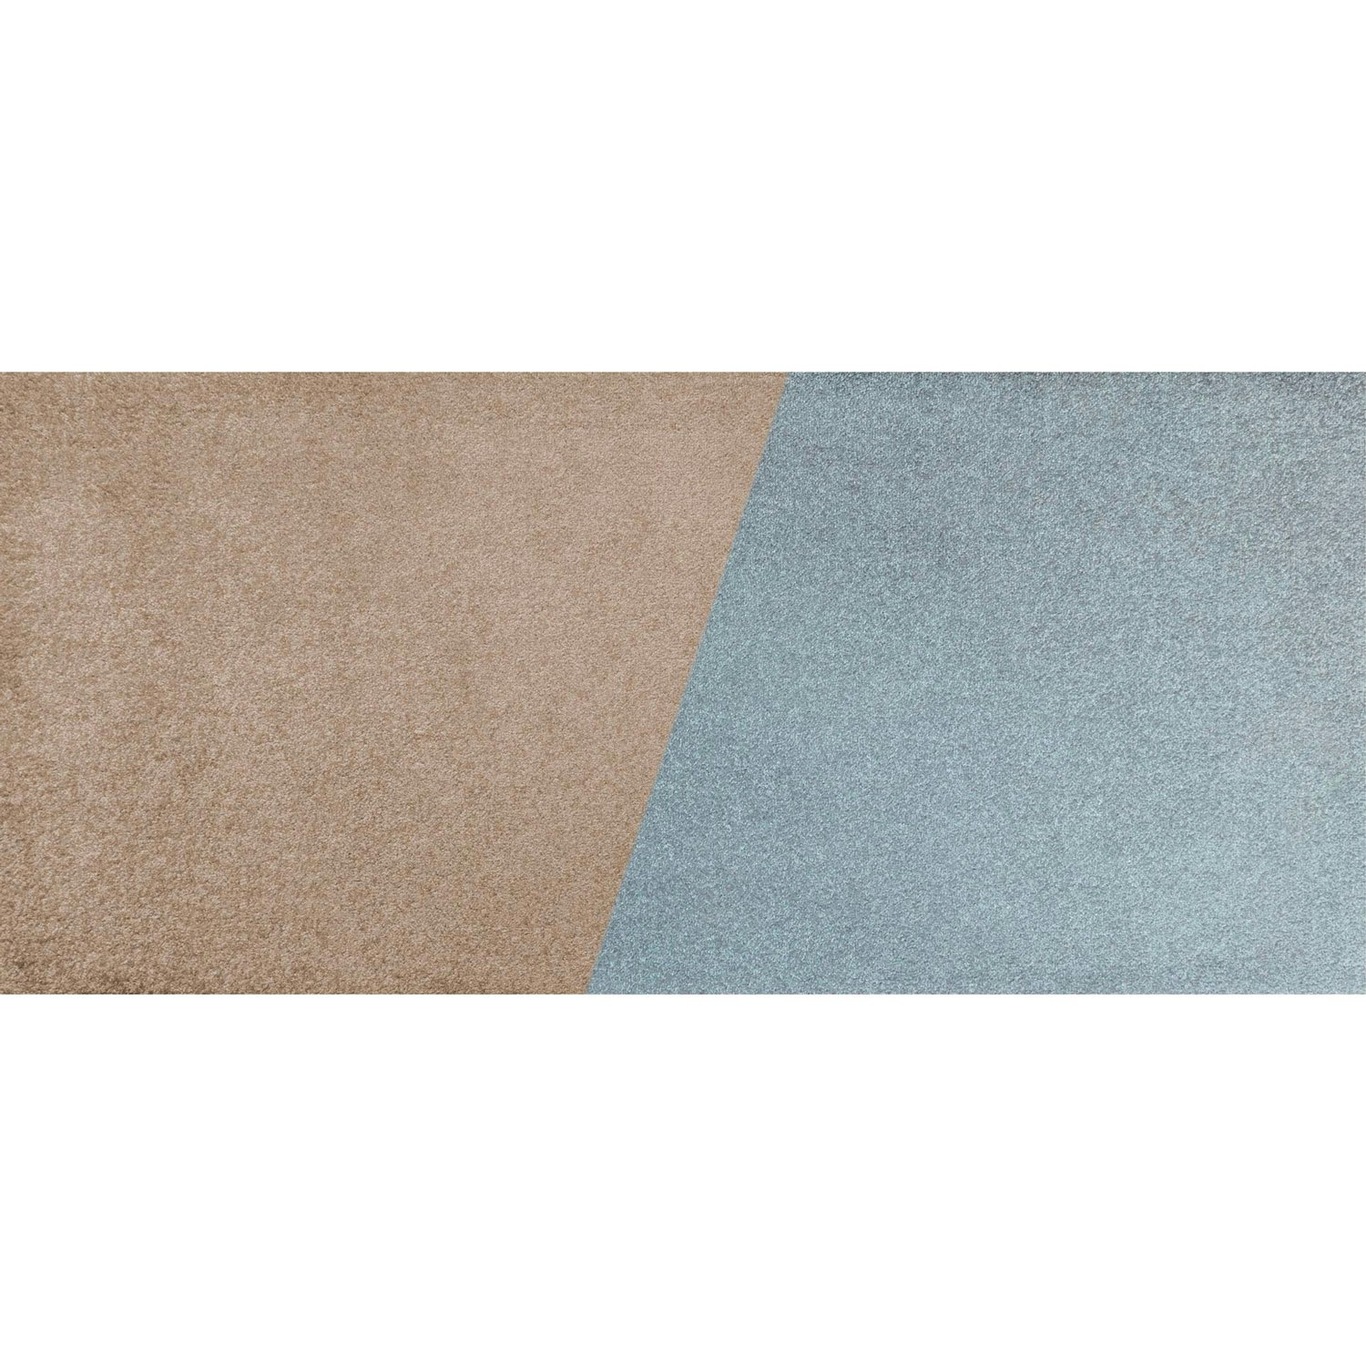 Duet Teppich 70x150 cm, Slate Blue